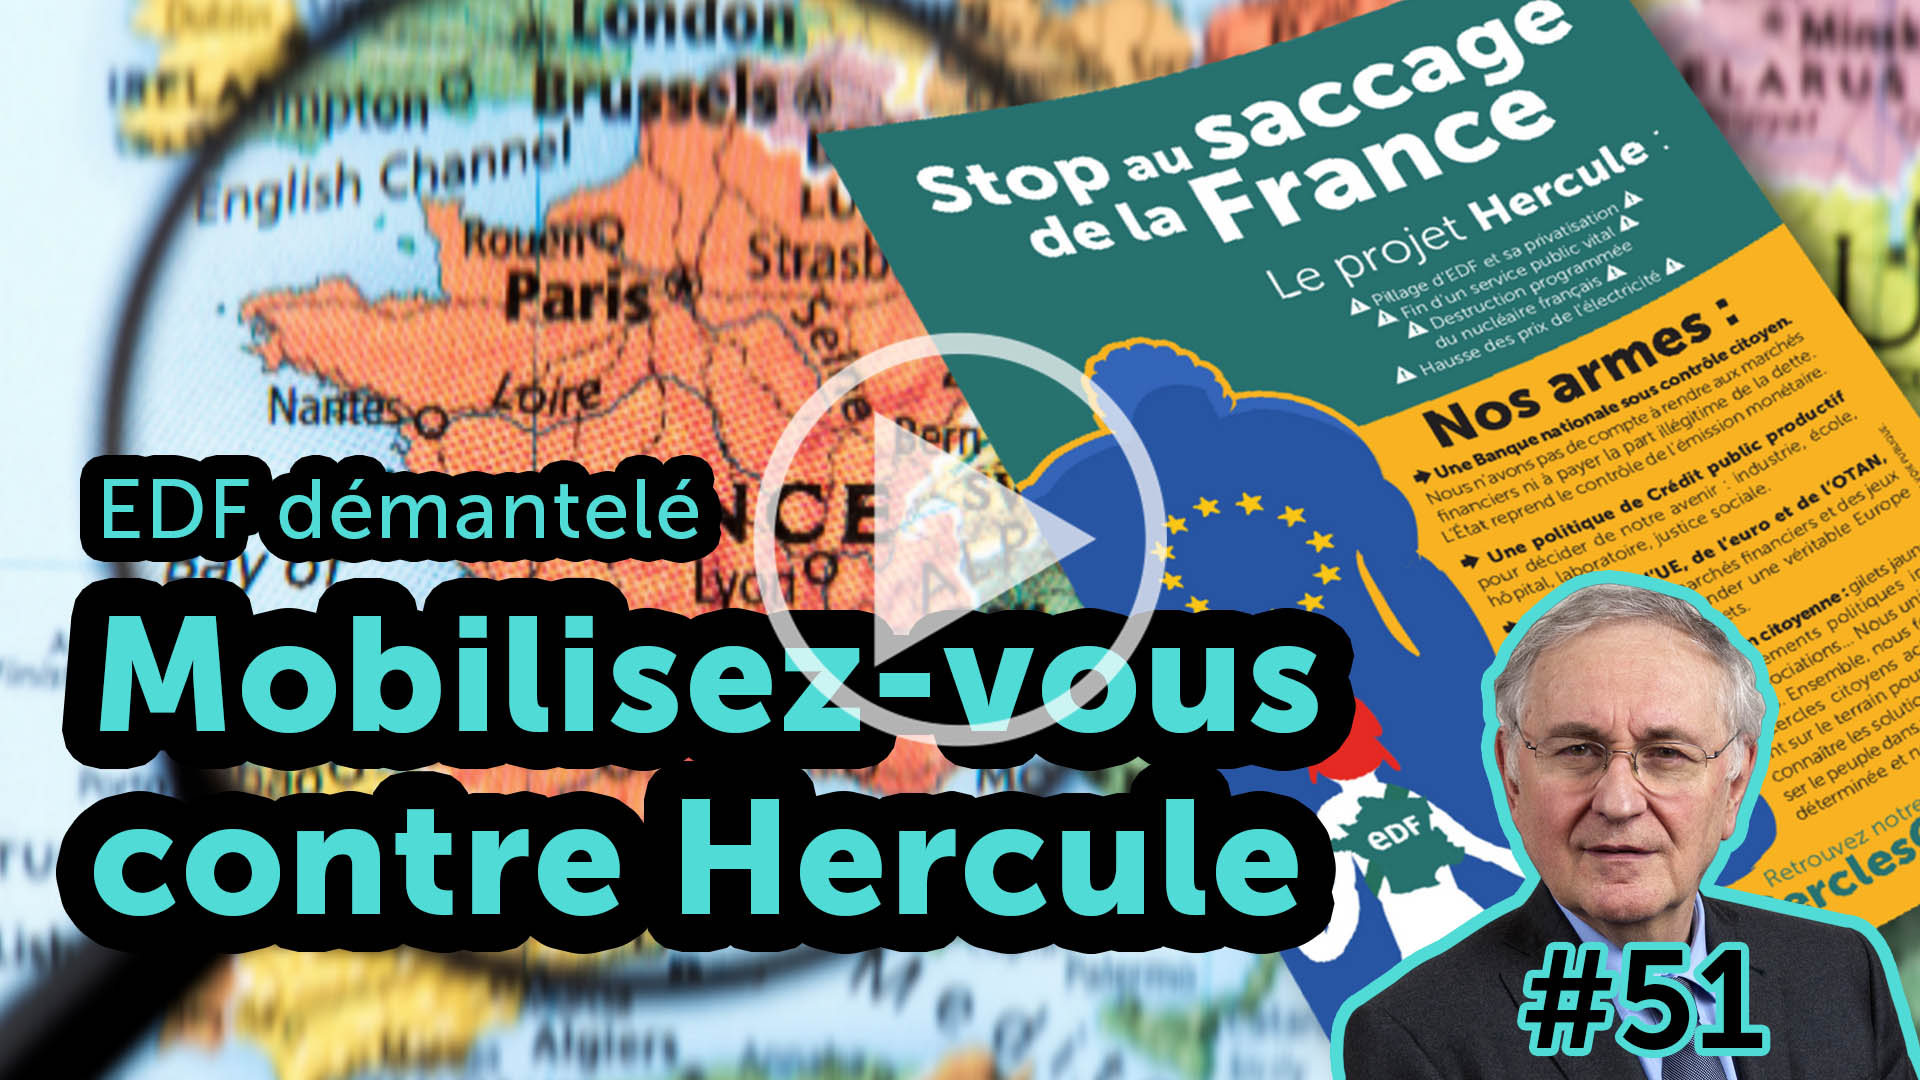 EDF démantelé : mobilisez-vous contre le projet Hercule - EJC #51